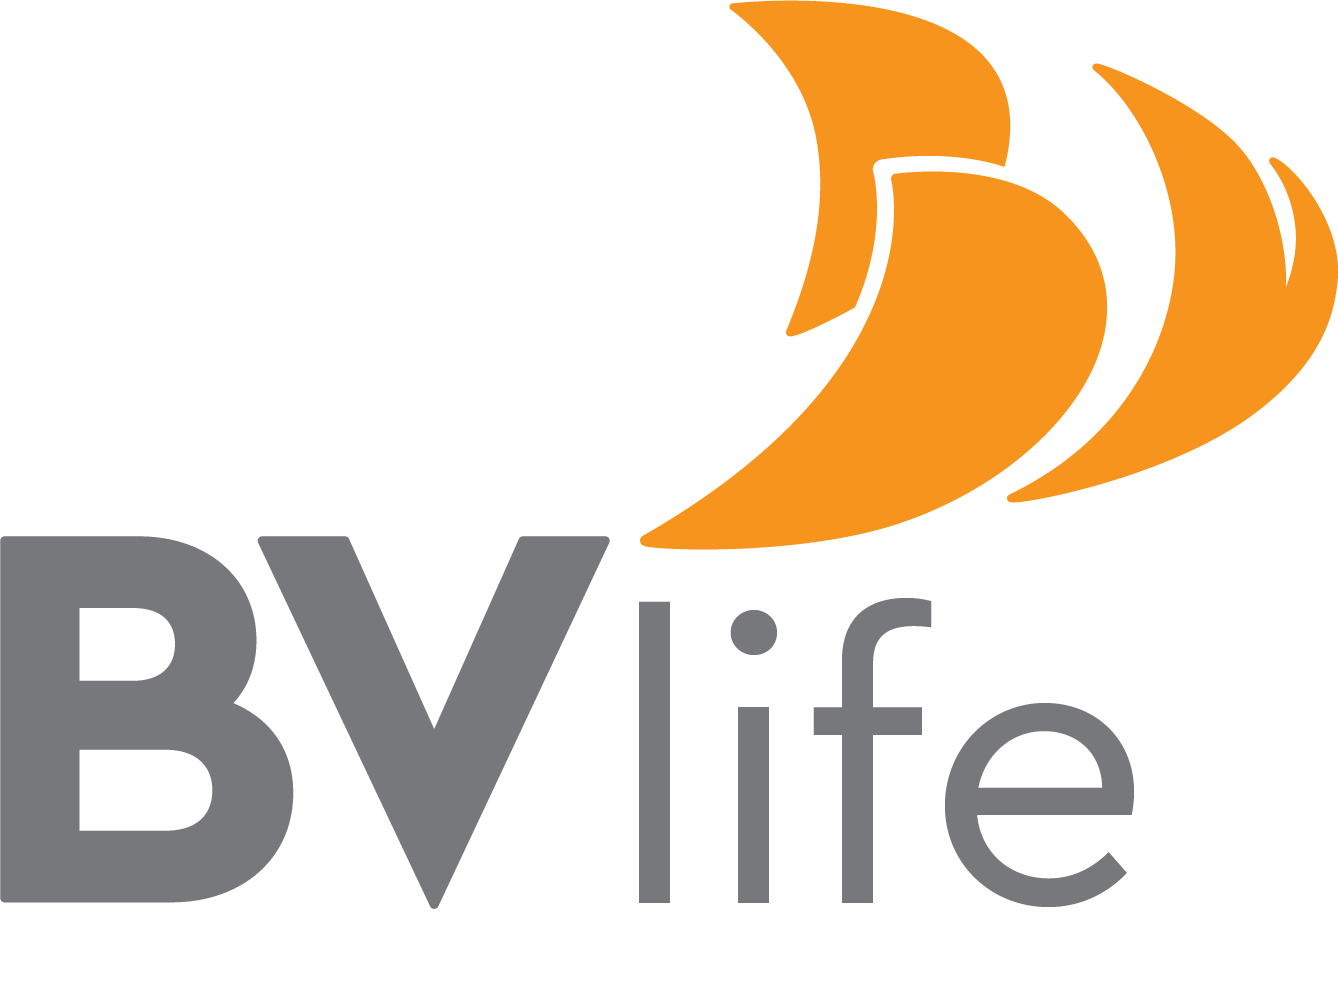 Công ty cổ phần BV Life được thành lập trên nền tảng Vinaconex Mec. BV Life là đơn vị thành viên thuộc Tập đoàn Bách Việt có nhiệm vụ quản lý và triển khai các hoạt động kinh doanh thương mại của Tập đoàn.
